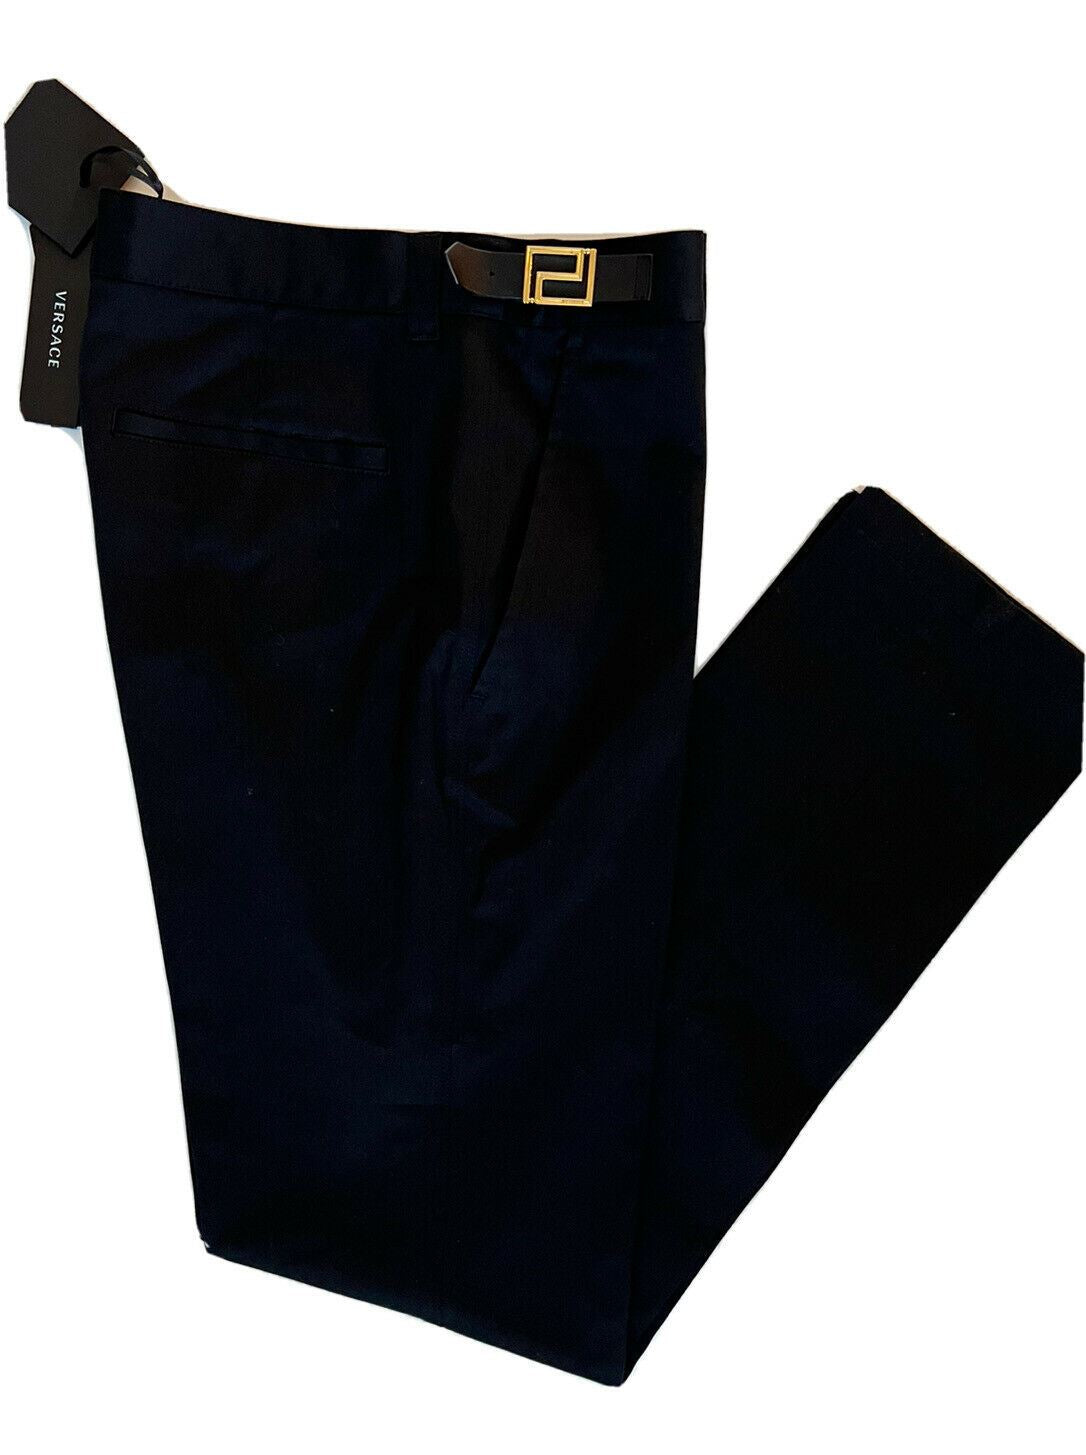 Мужские черные брюки Versace Palazzo NWT 725 долларов США 38 США (54 евро), сделано в Италии 87482